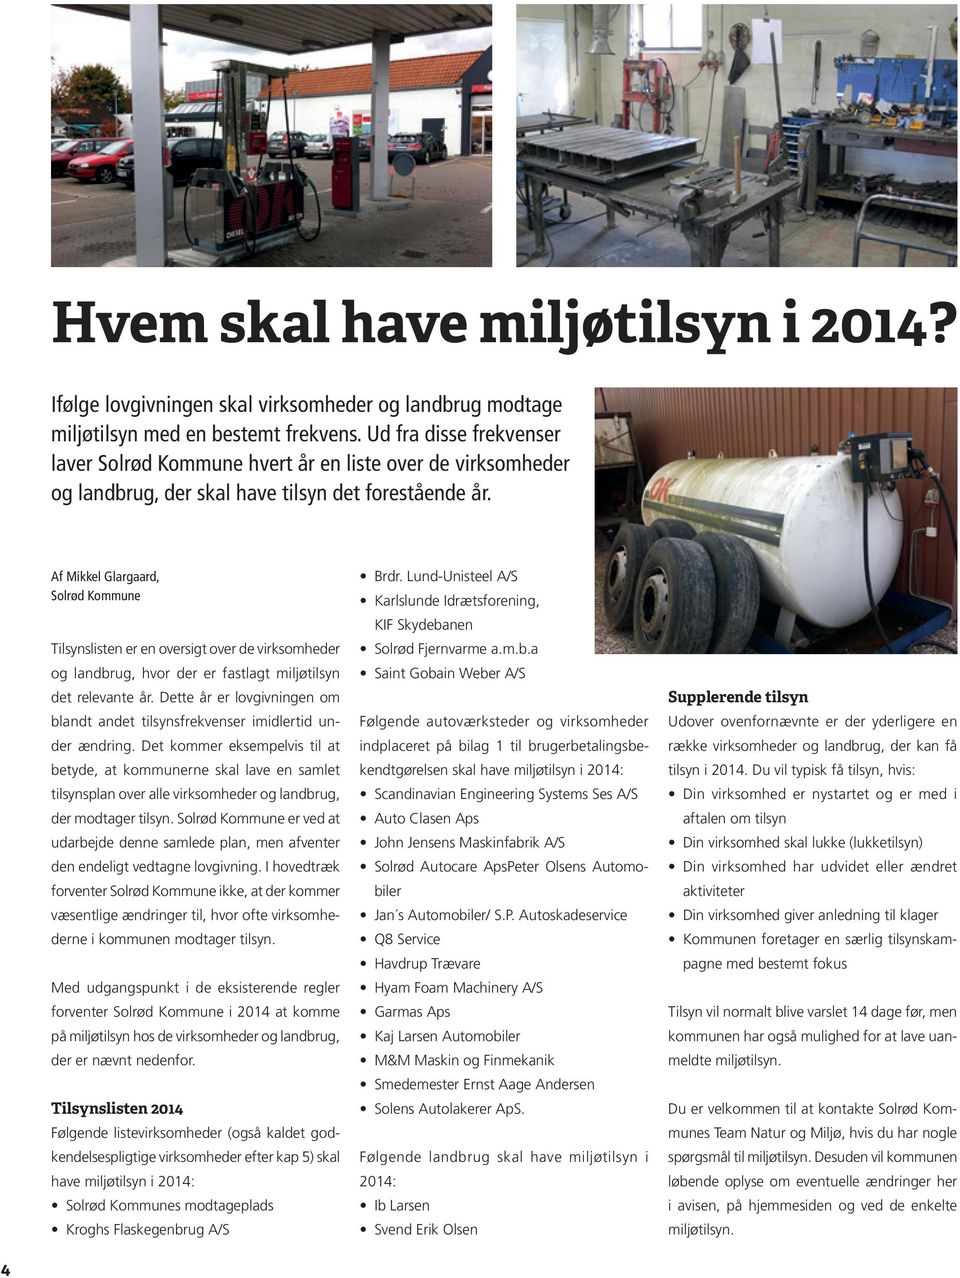 Af Mikkel Glargaard, Solrød Kommune Tilsynslisten er en oversigt over de virksomheder og landbrug, hvor der er fastlagt miljøtilsyn det relevante år.